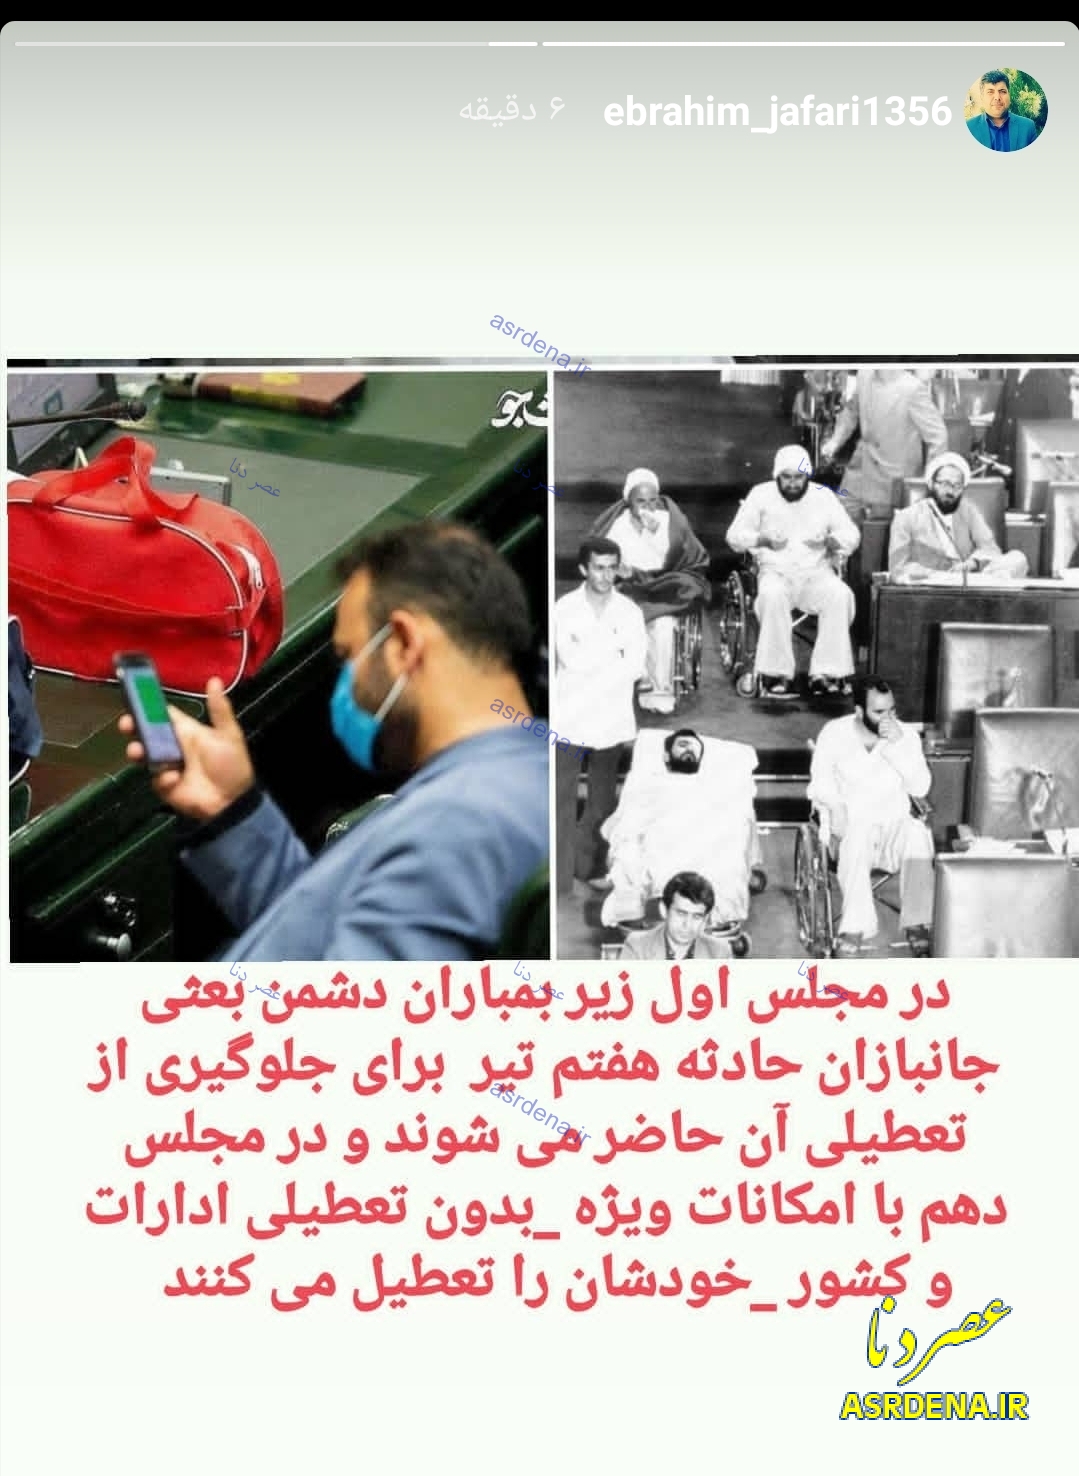 واکنش فرماندار کهگیلویه در دولت احمدی نژاد به تعطیلی مجلس